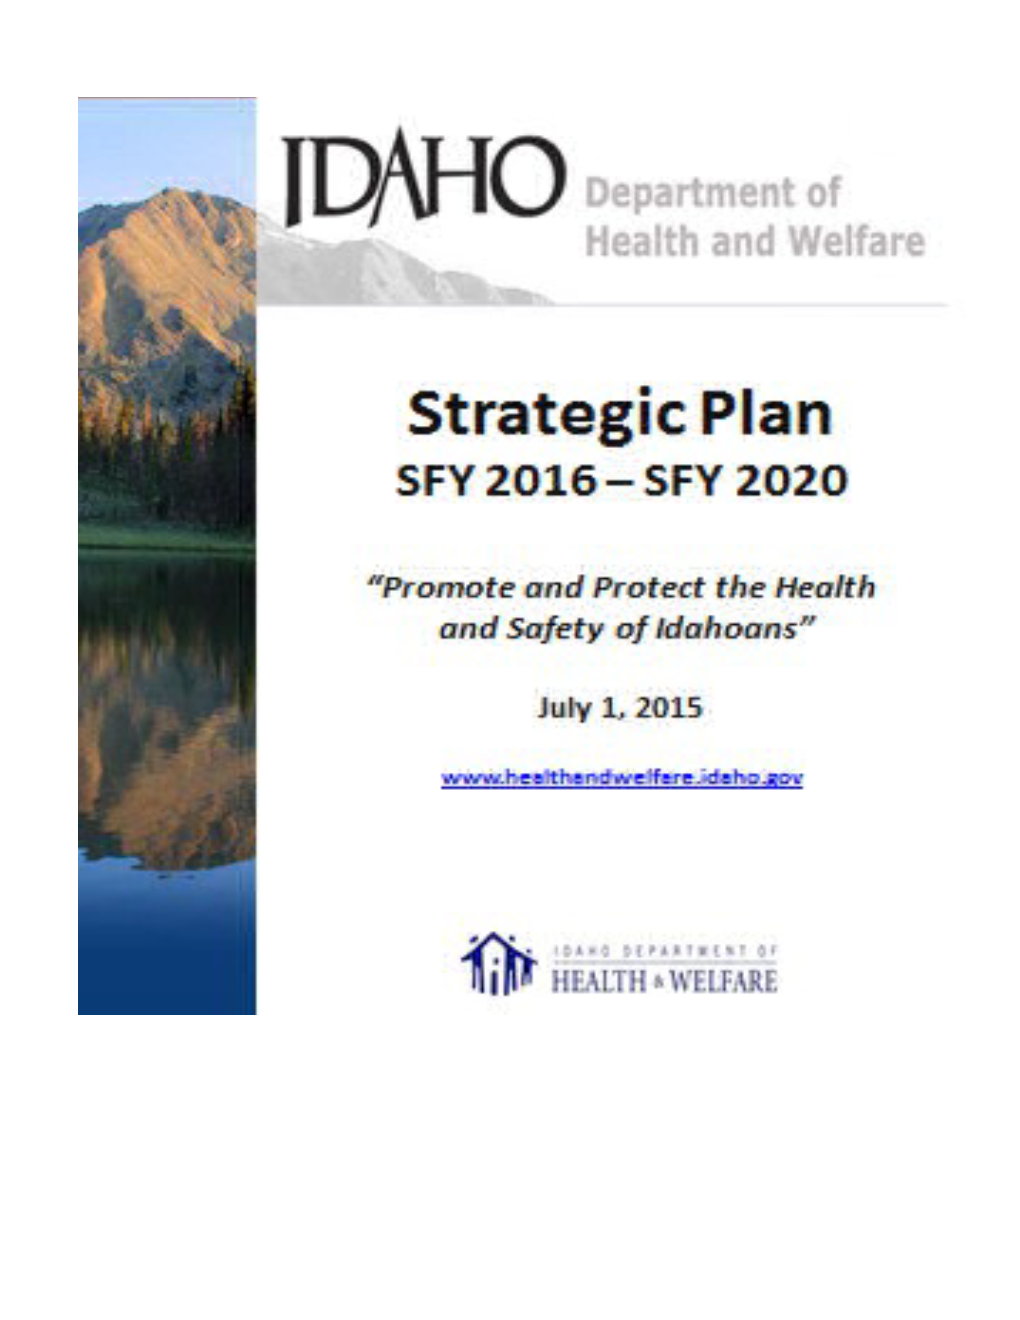 DHW Strategic Plan